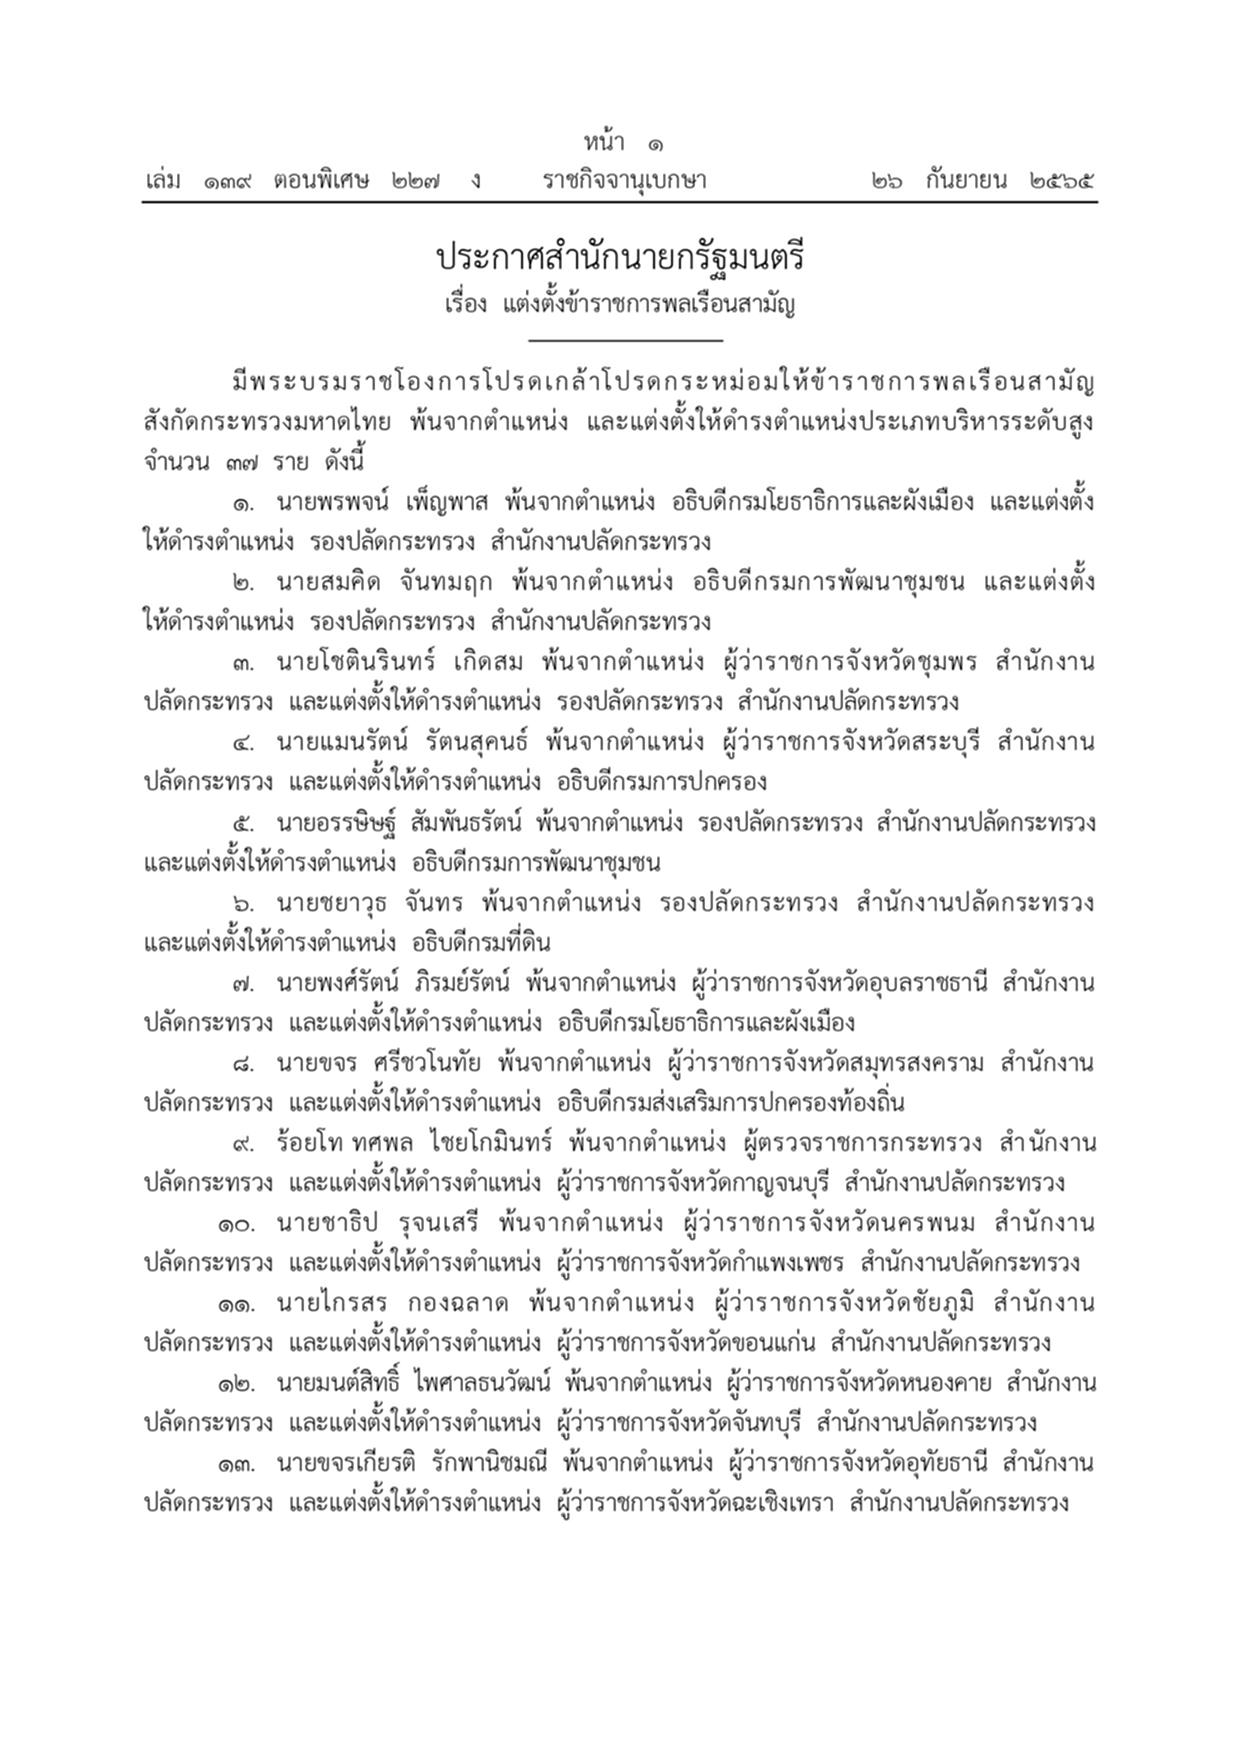 พระบรมราชโองการ, แต่งตั้งข้าราชการพลเรือนสามัญ, กระทรวงมหาดไทย, ราชกิจจานุเบกษา, สำนักนายกรัฐมนตรี, ผู้ว่าราชการจังหวัด